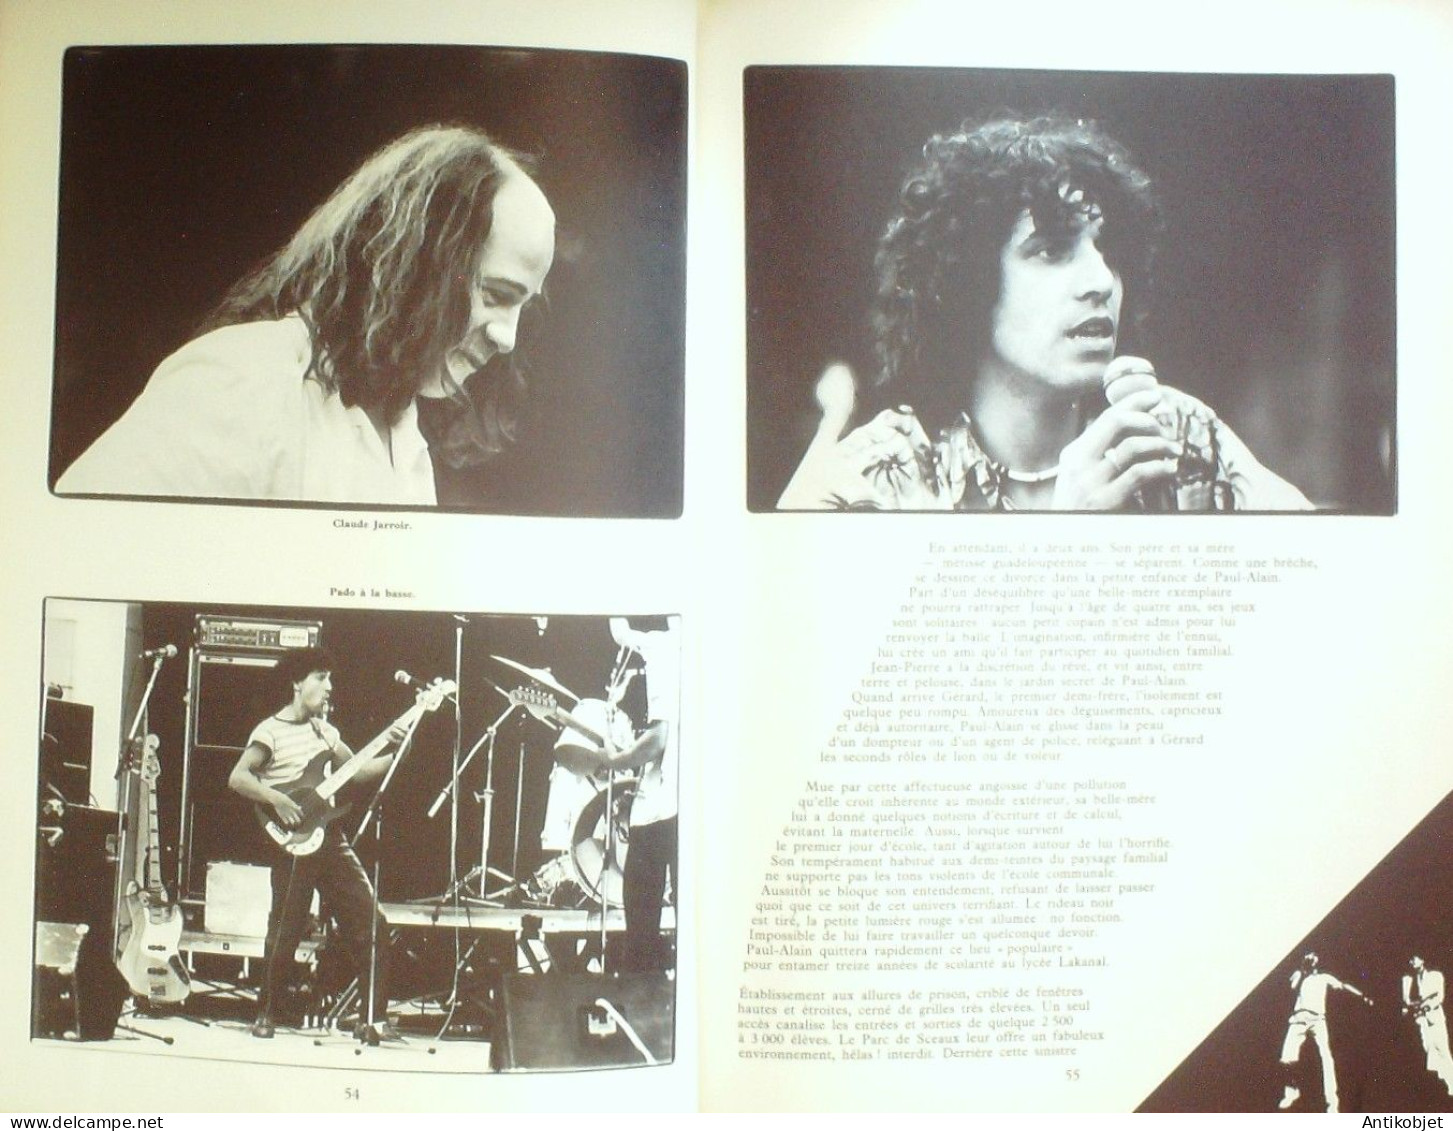 Clerc Julien Biographie De Tolbiac & Perrefeu Edit Bréa 1974 - Musique